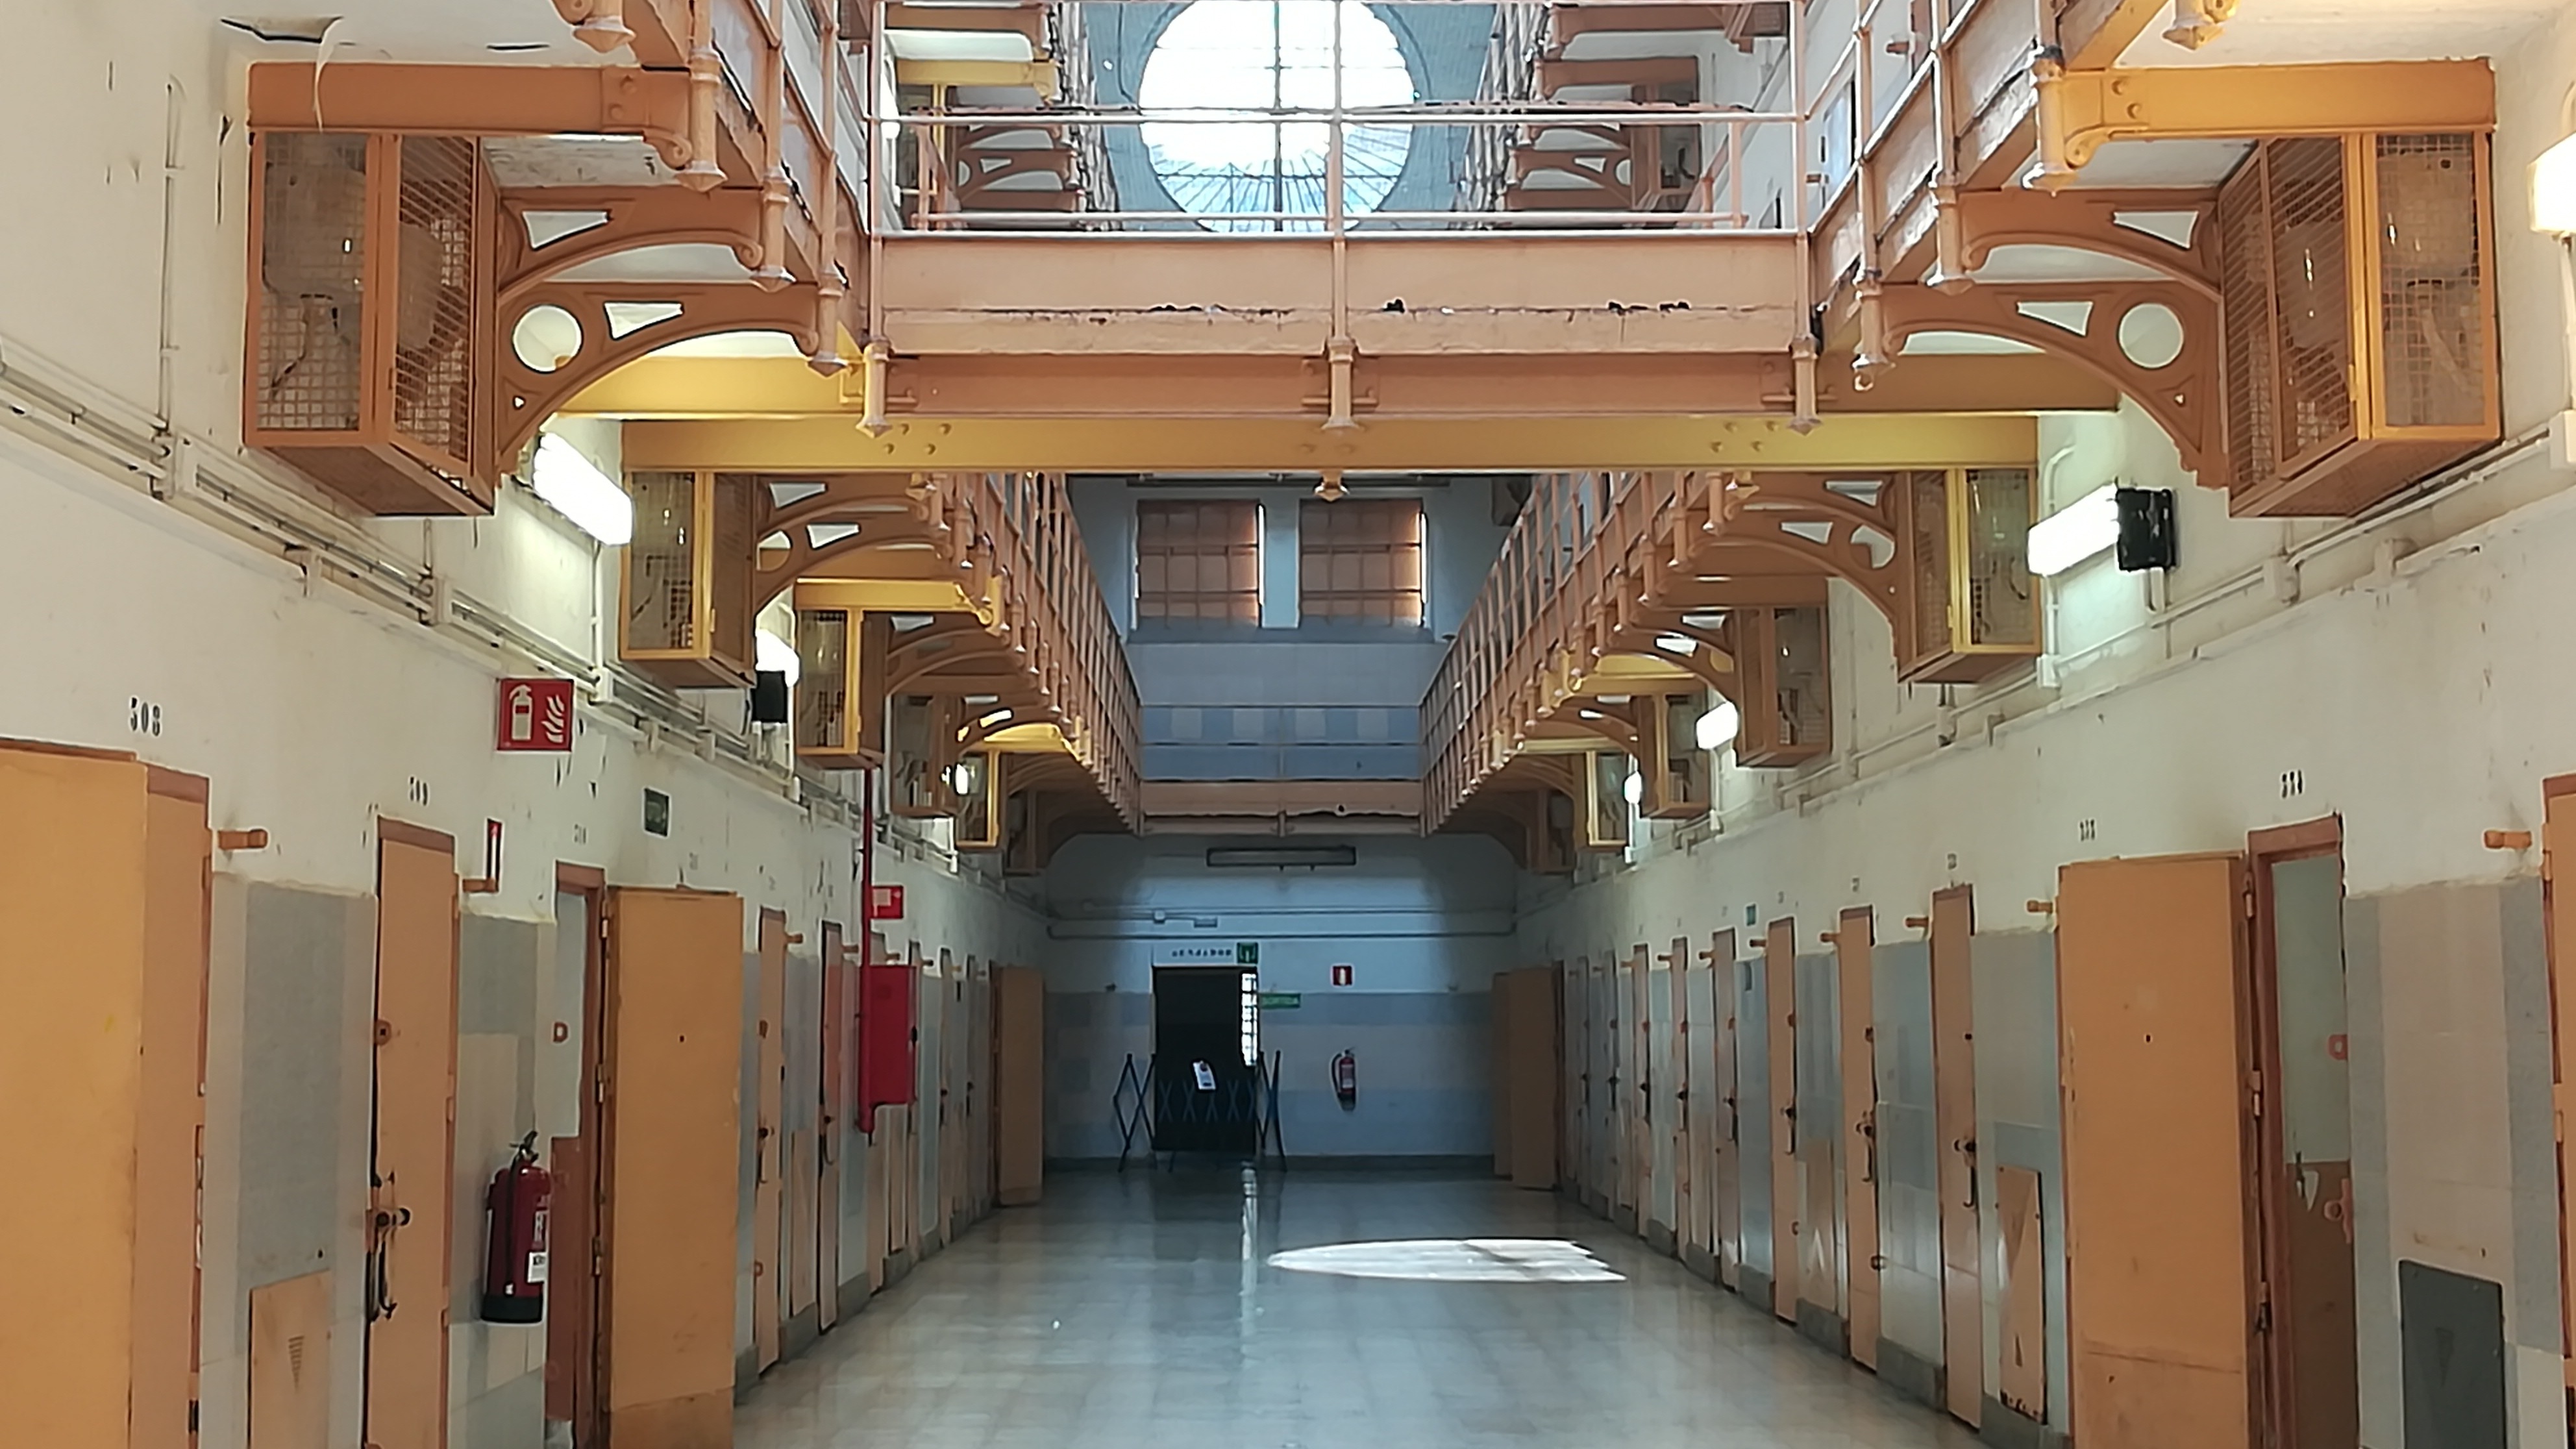 Sabies que aquesta presó de Barcelona és visitable i pots veure-la gratis?